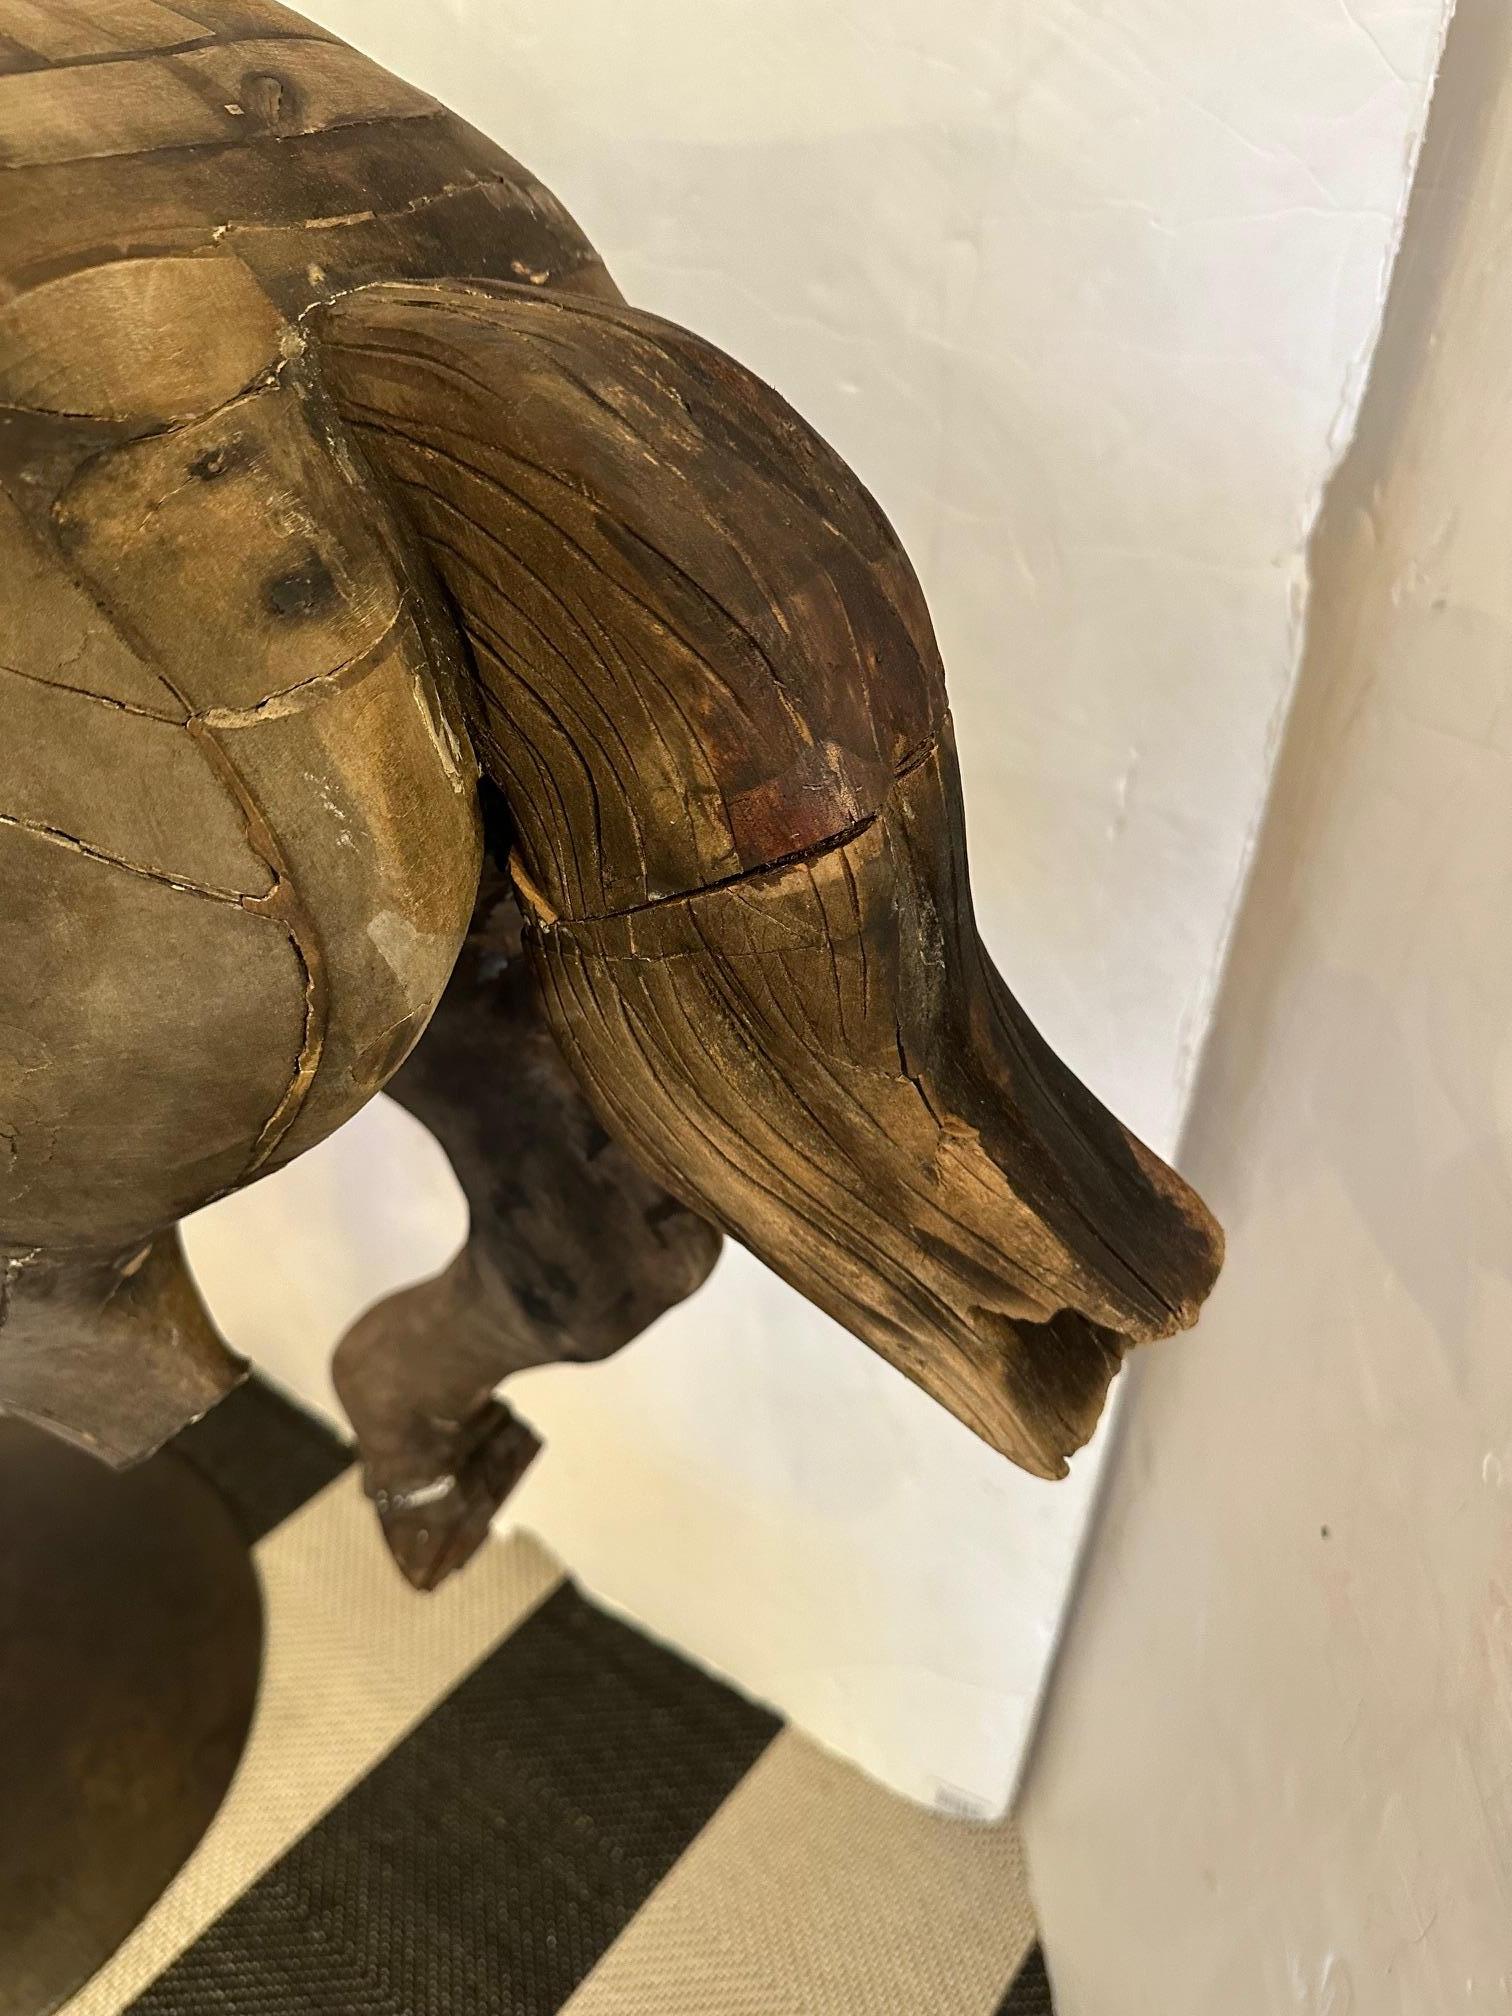 Fantastische antike gefunden unlackiert Karussell Pferd Form mit notleidenden Holz, erstaunlichen Charakter, und hübsche benutzerdefinierte Eisen stehen.  Es ist eine beeindruckende Volkskunstskulptur von monochromer Schönheit mit all den fehlenden